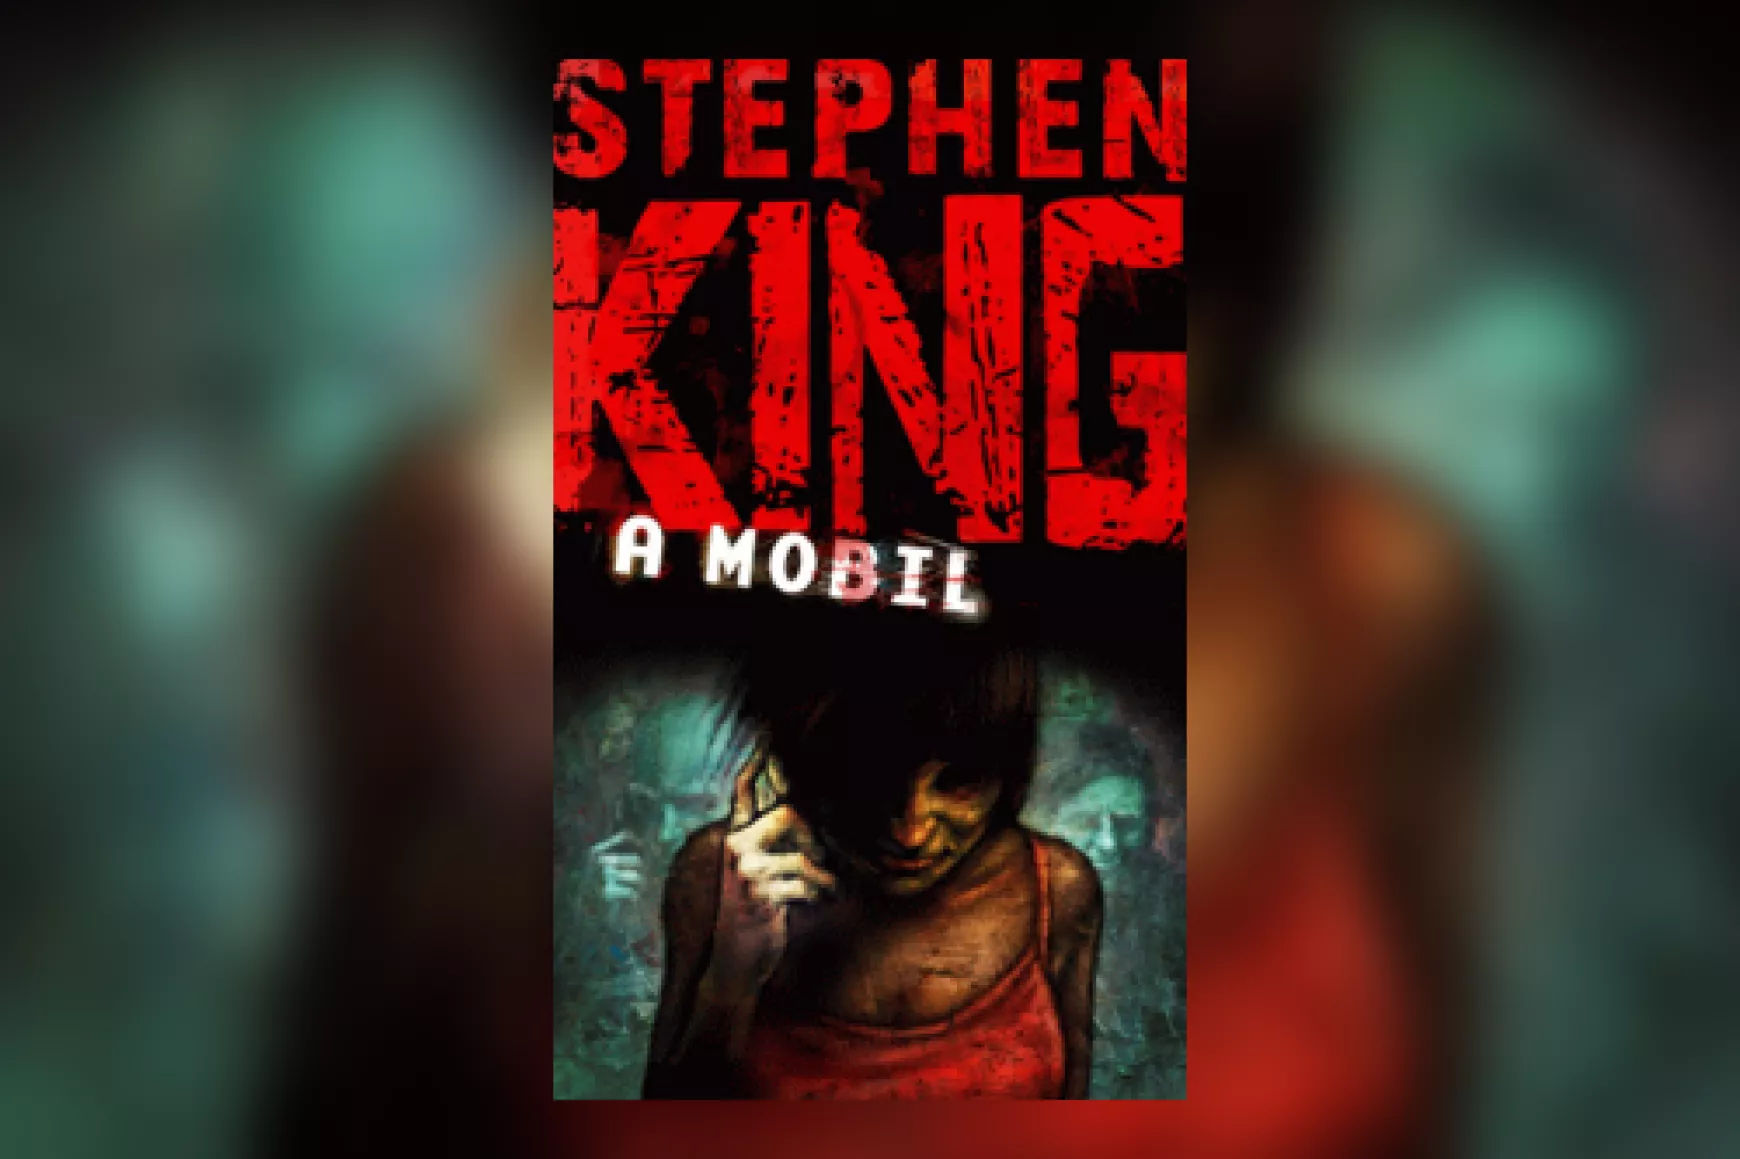 Stephen KIng könyve: A mobil